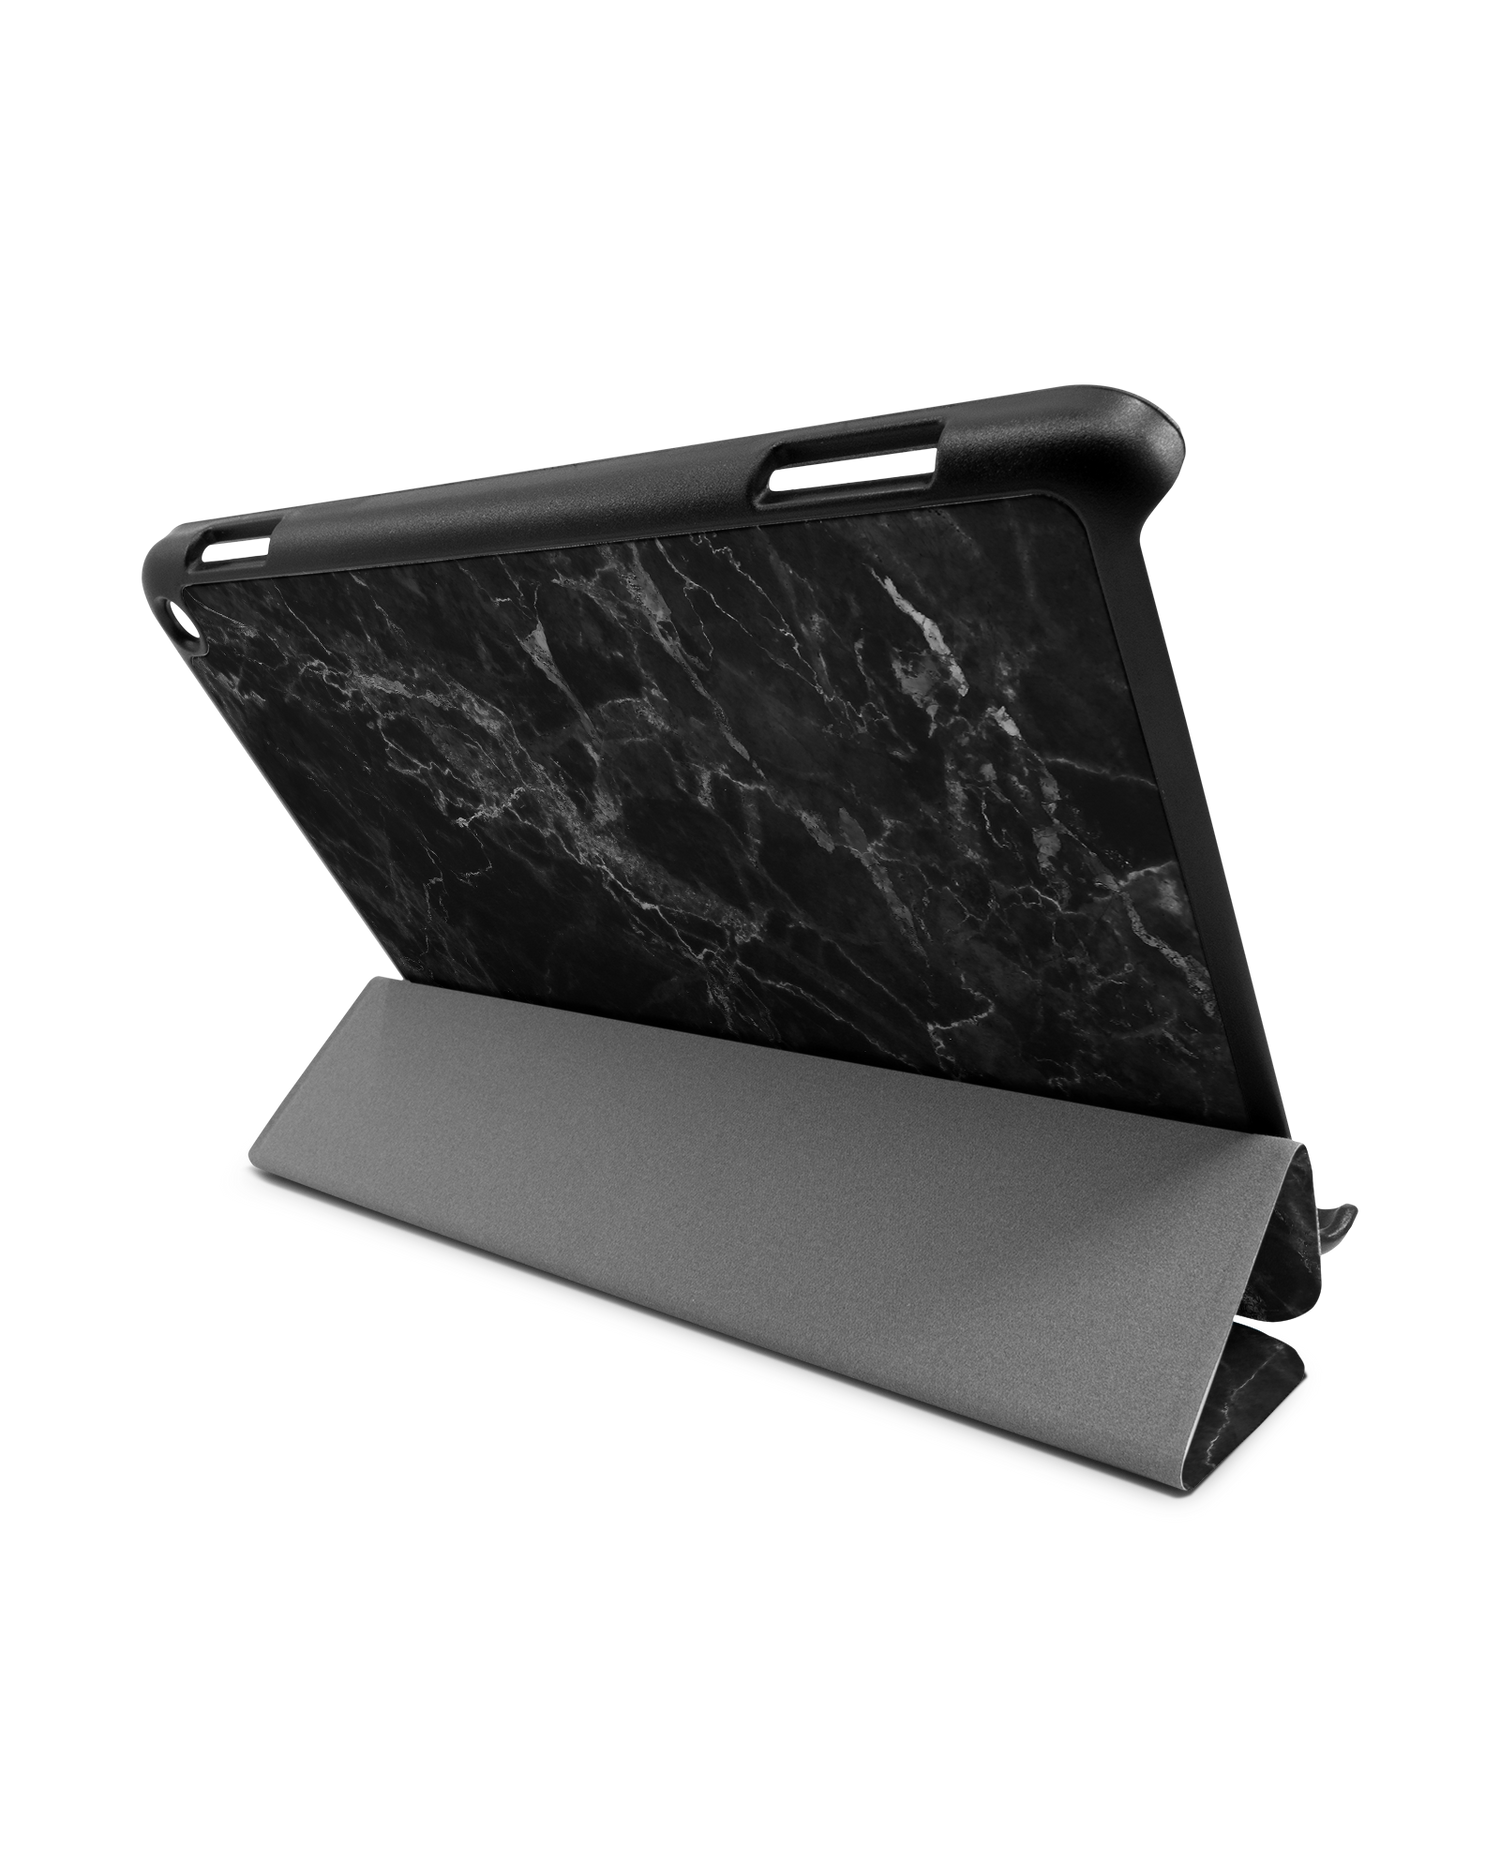 Midnight Marble Tablet Smart Case für Amazon Fire HD 8 / HD 8 Plus: Aufgestellt im Querformat